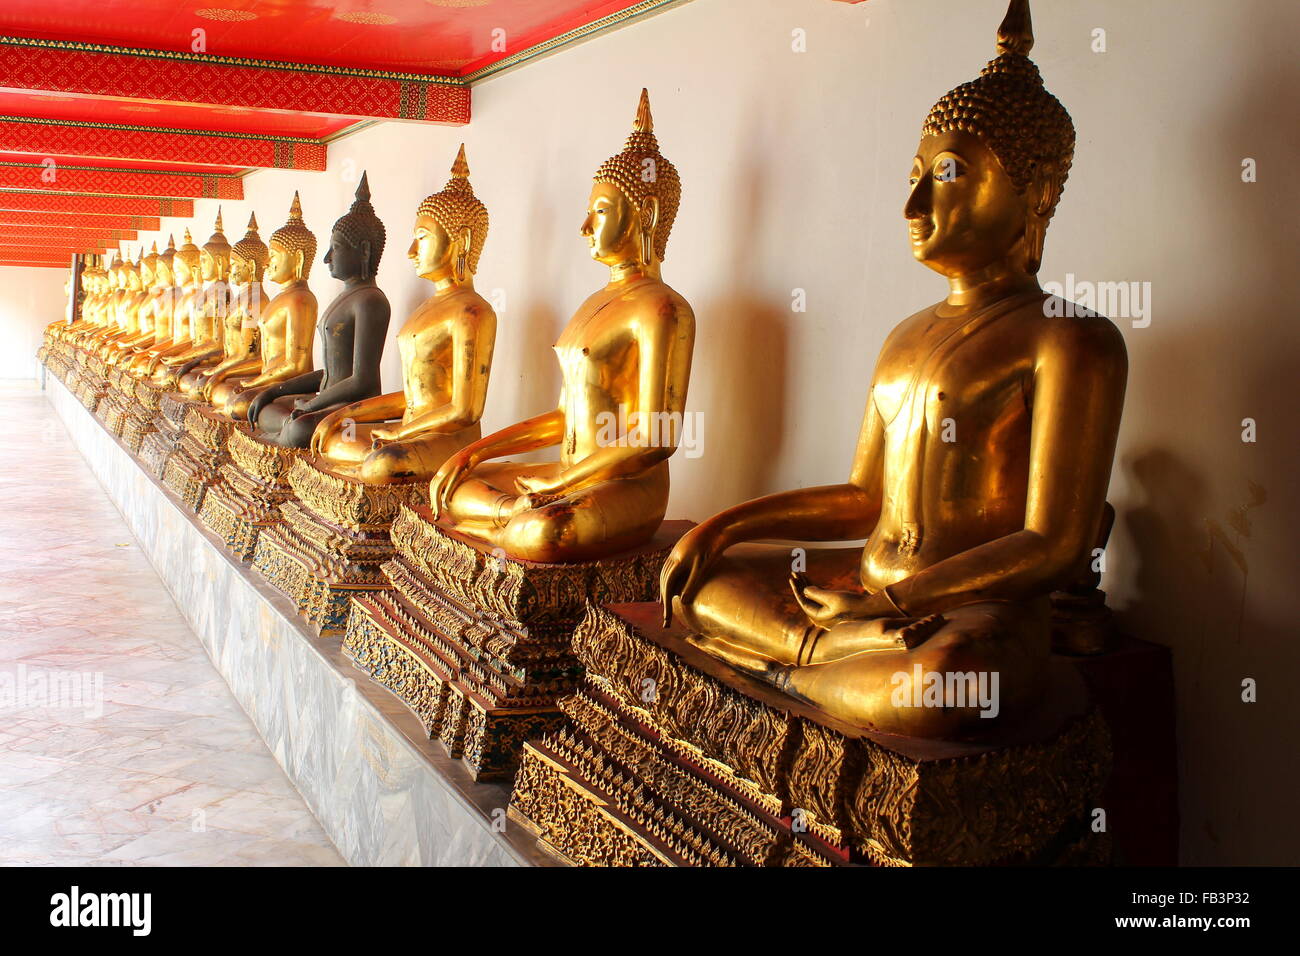 Schatten der Meditation Buddha-Statuen im buddhistischen Tempel Wat Pho, Bangkok, Thailand Stockfoto